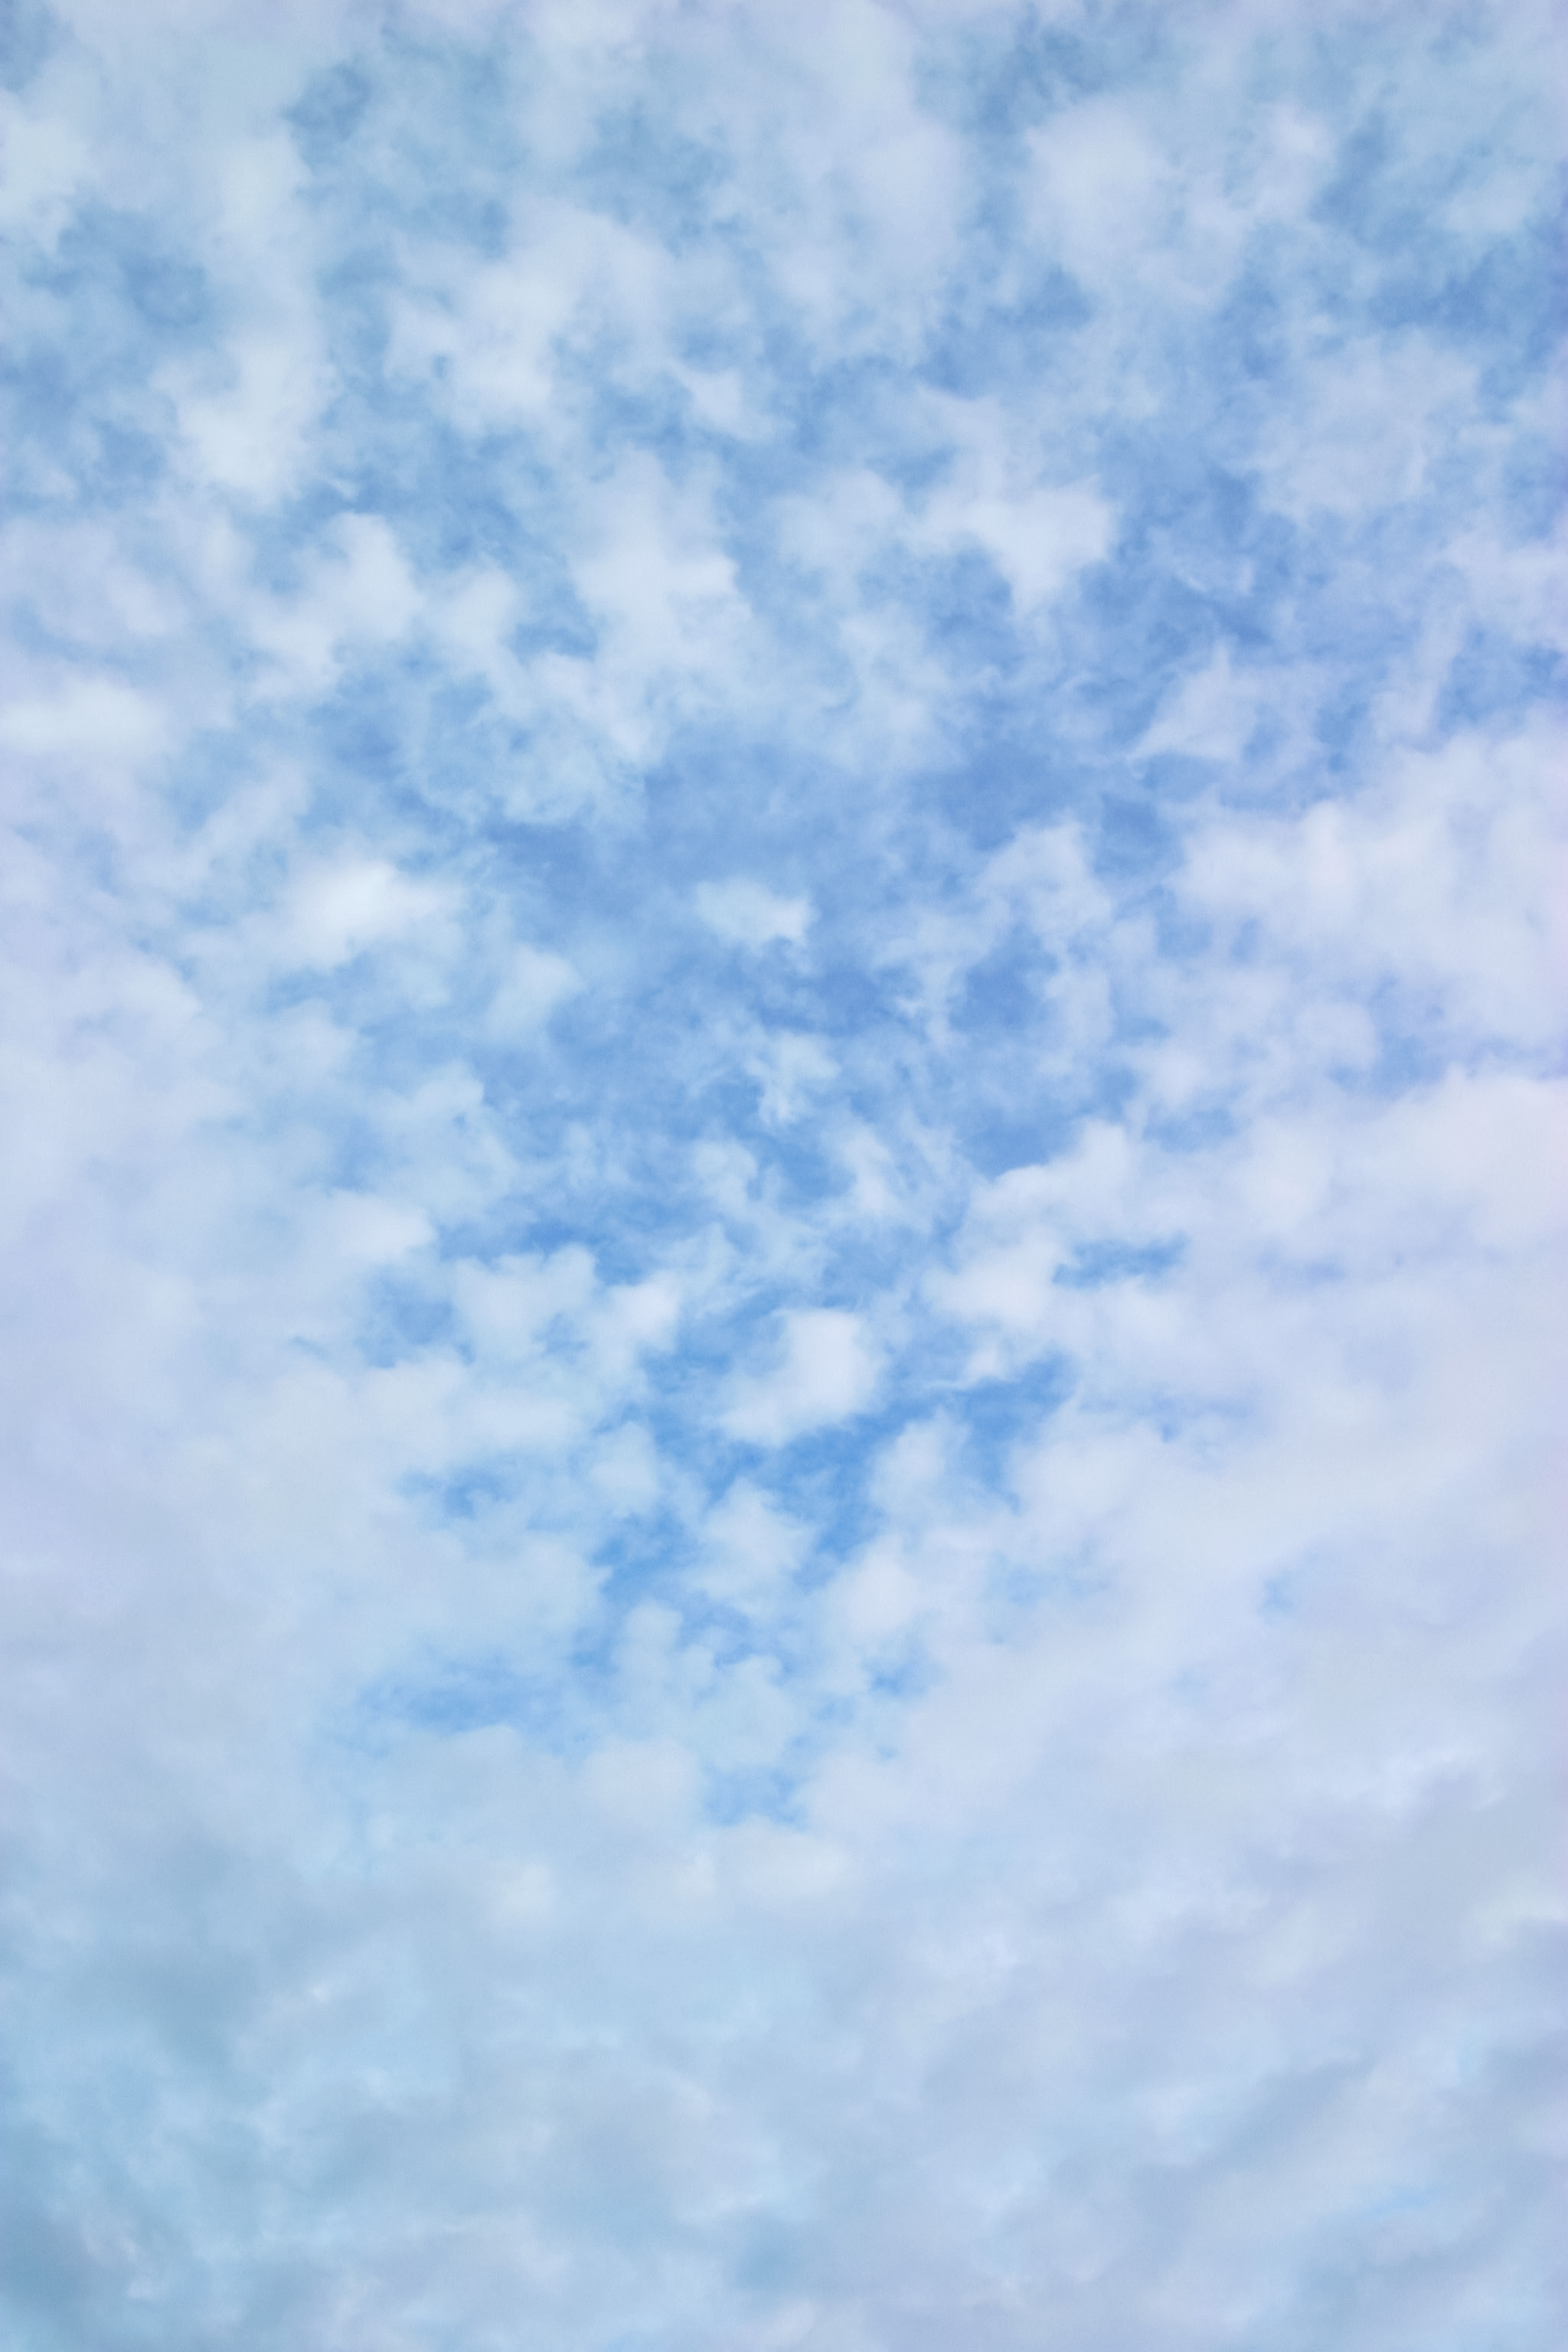 空と雲の画像素材 Free Photos L/RGB/JPEG/350dpi